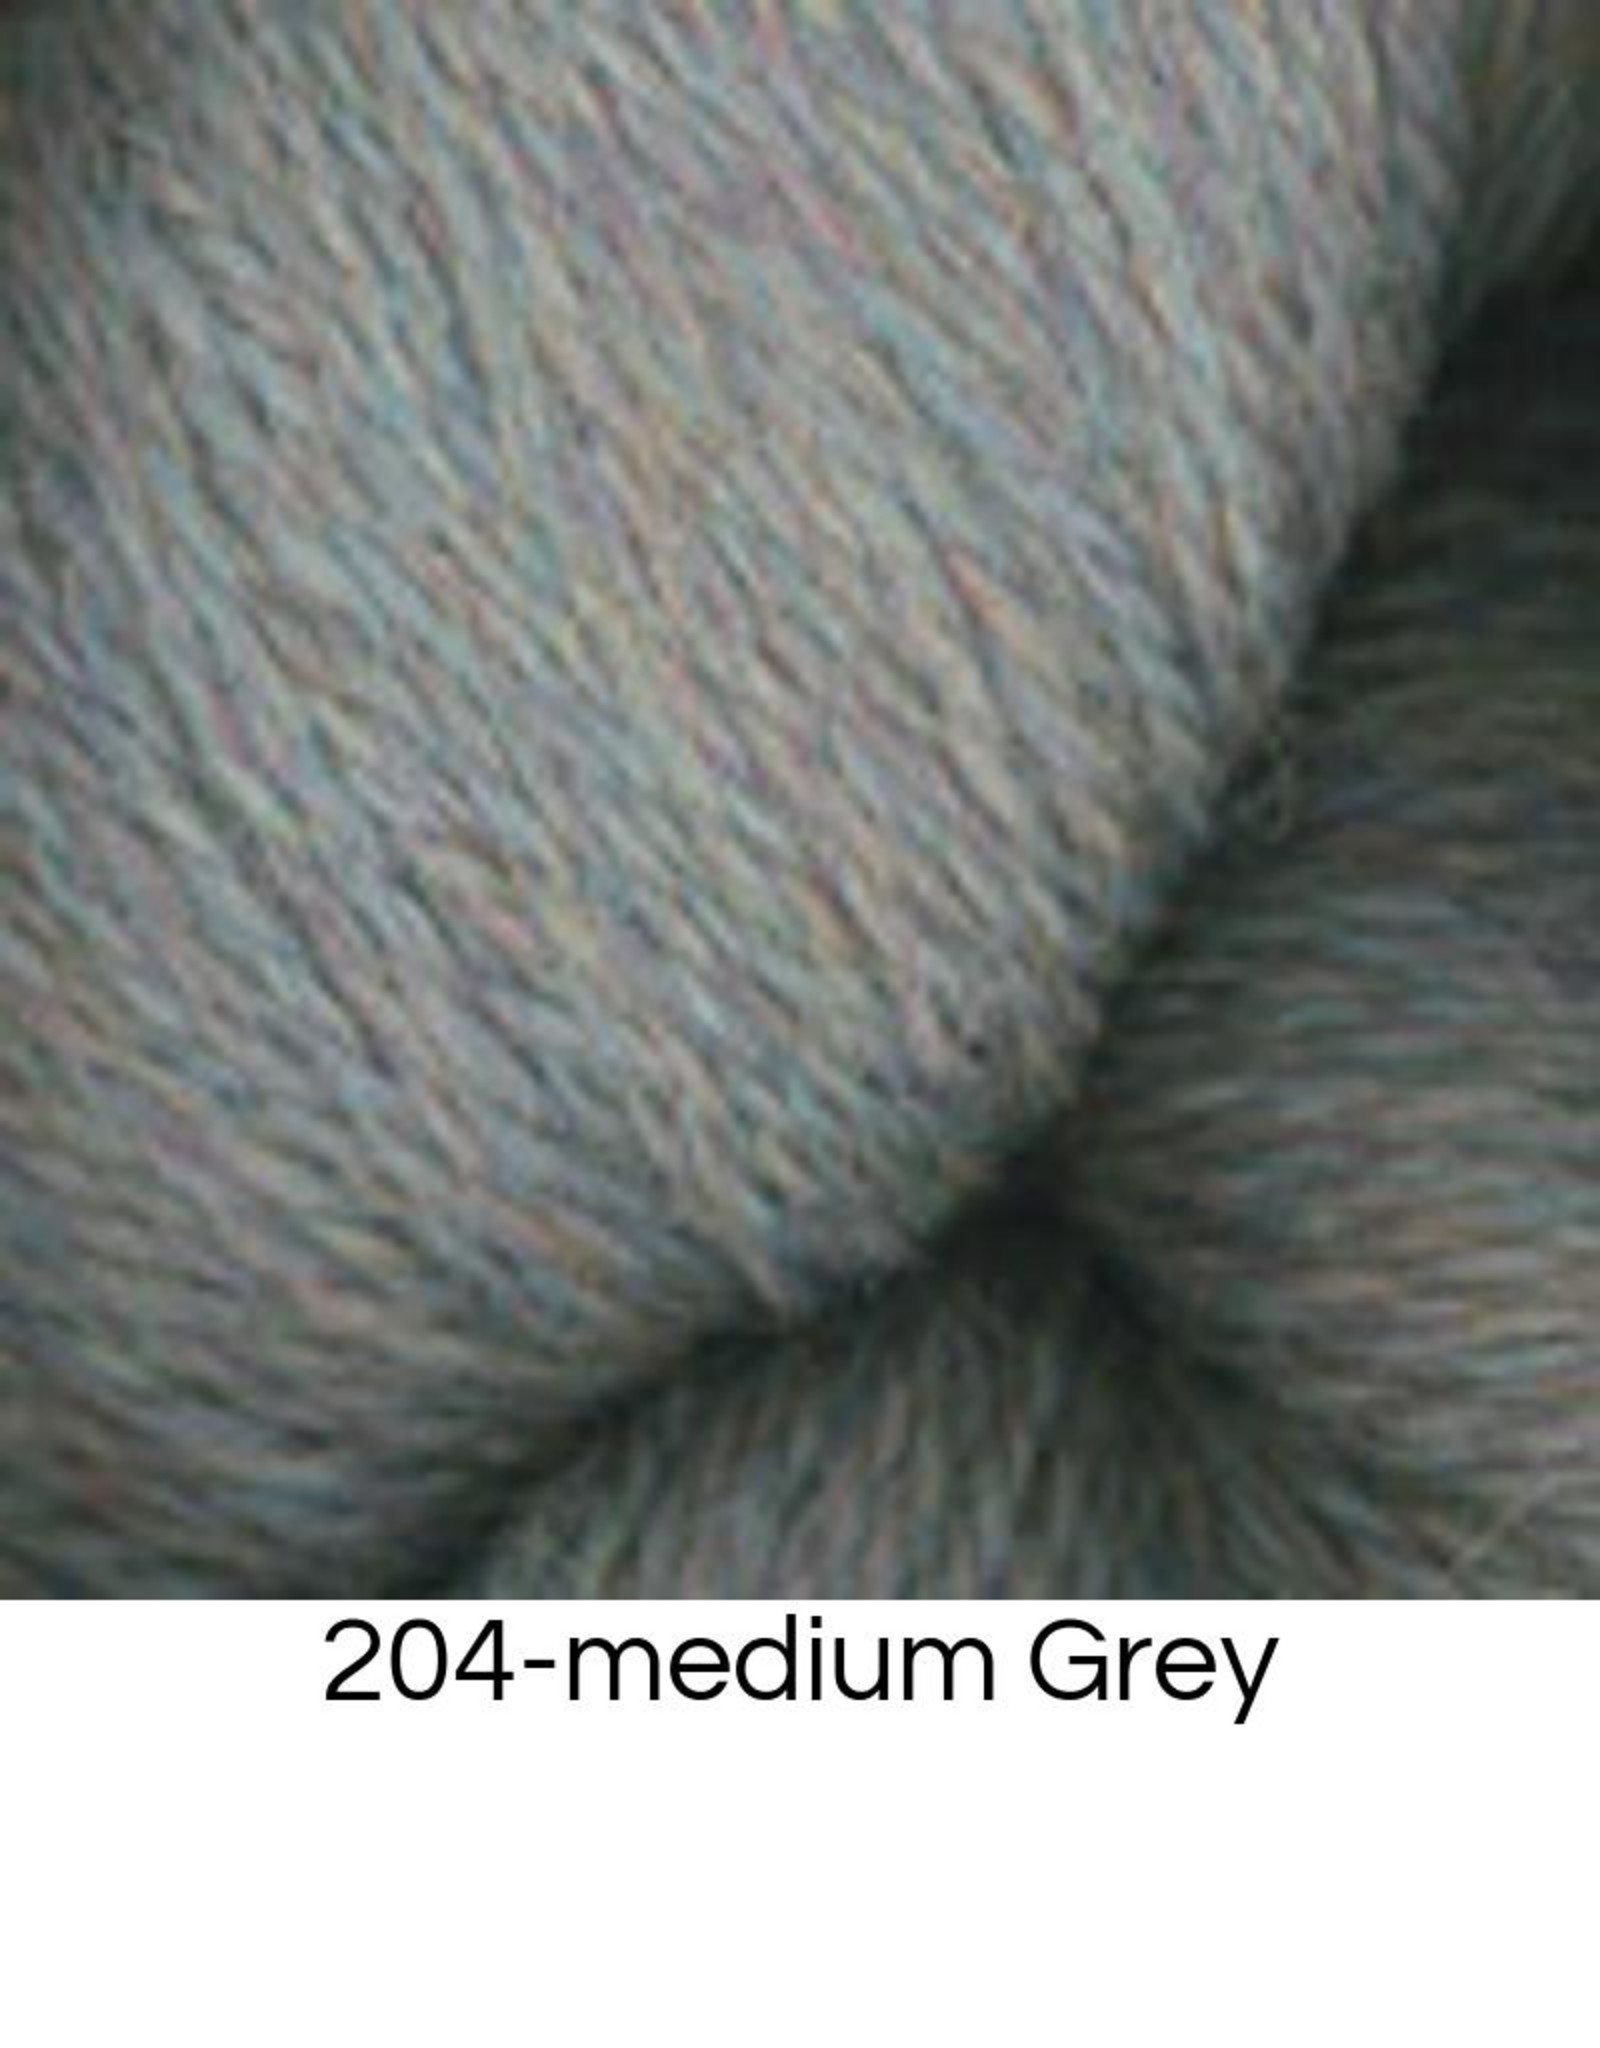 Hearthstone Yarn - Black Grey Marl (# 202) | Plymouth 